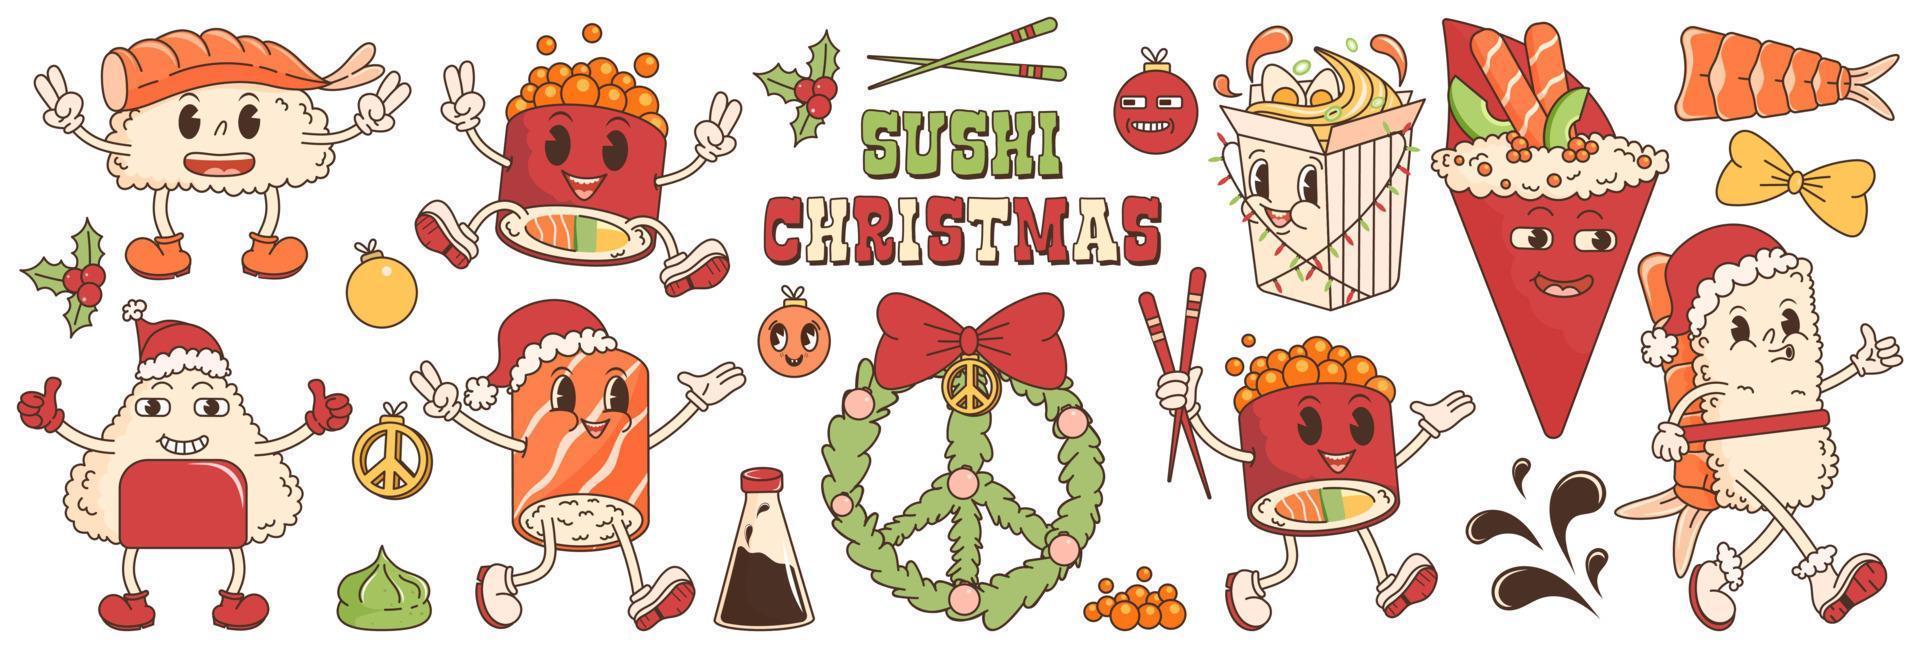 maravillosa pegatina navideña con sushi, ramen, rollo, salsa de soja, wasabi, camarones. en estilo retro hippie maravilloso de moda. ilustración vectorial con elementos tipográficos. personajes de dibujos animados retro comida asiática. vector